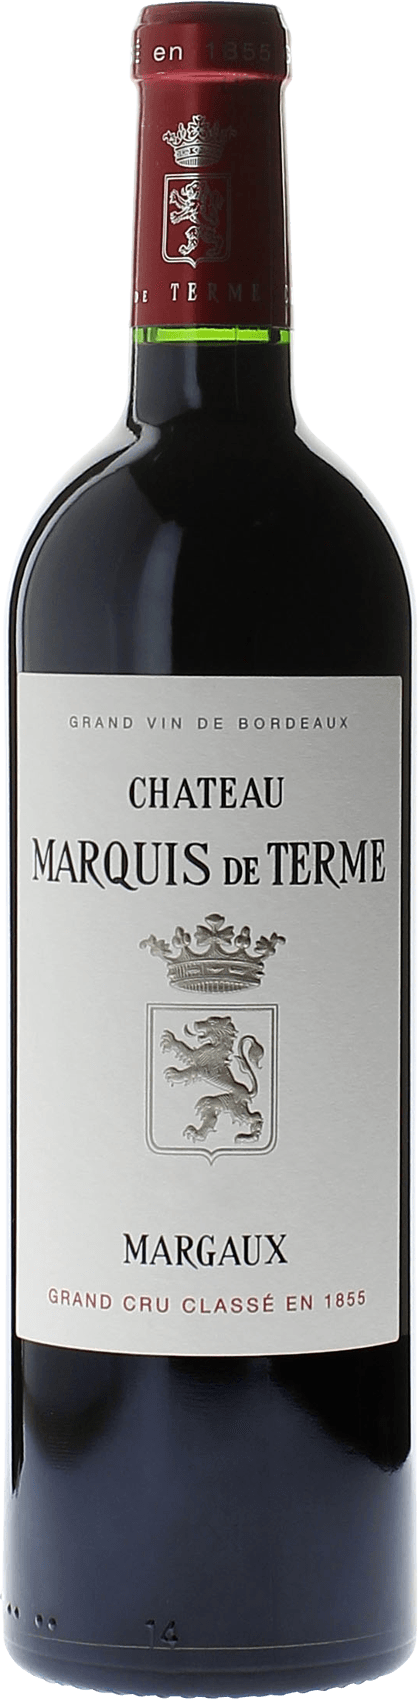 Marquis de terme 2009 4me Grand cru class Margaux, Bordeaux rouge